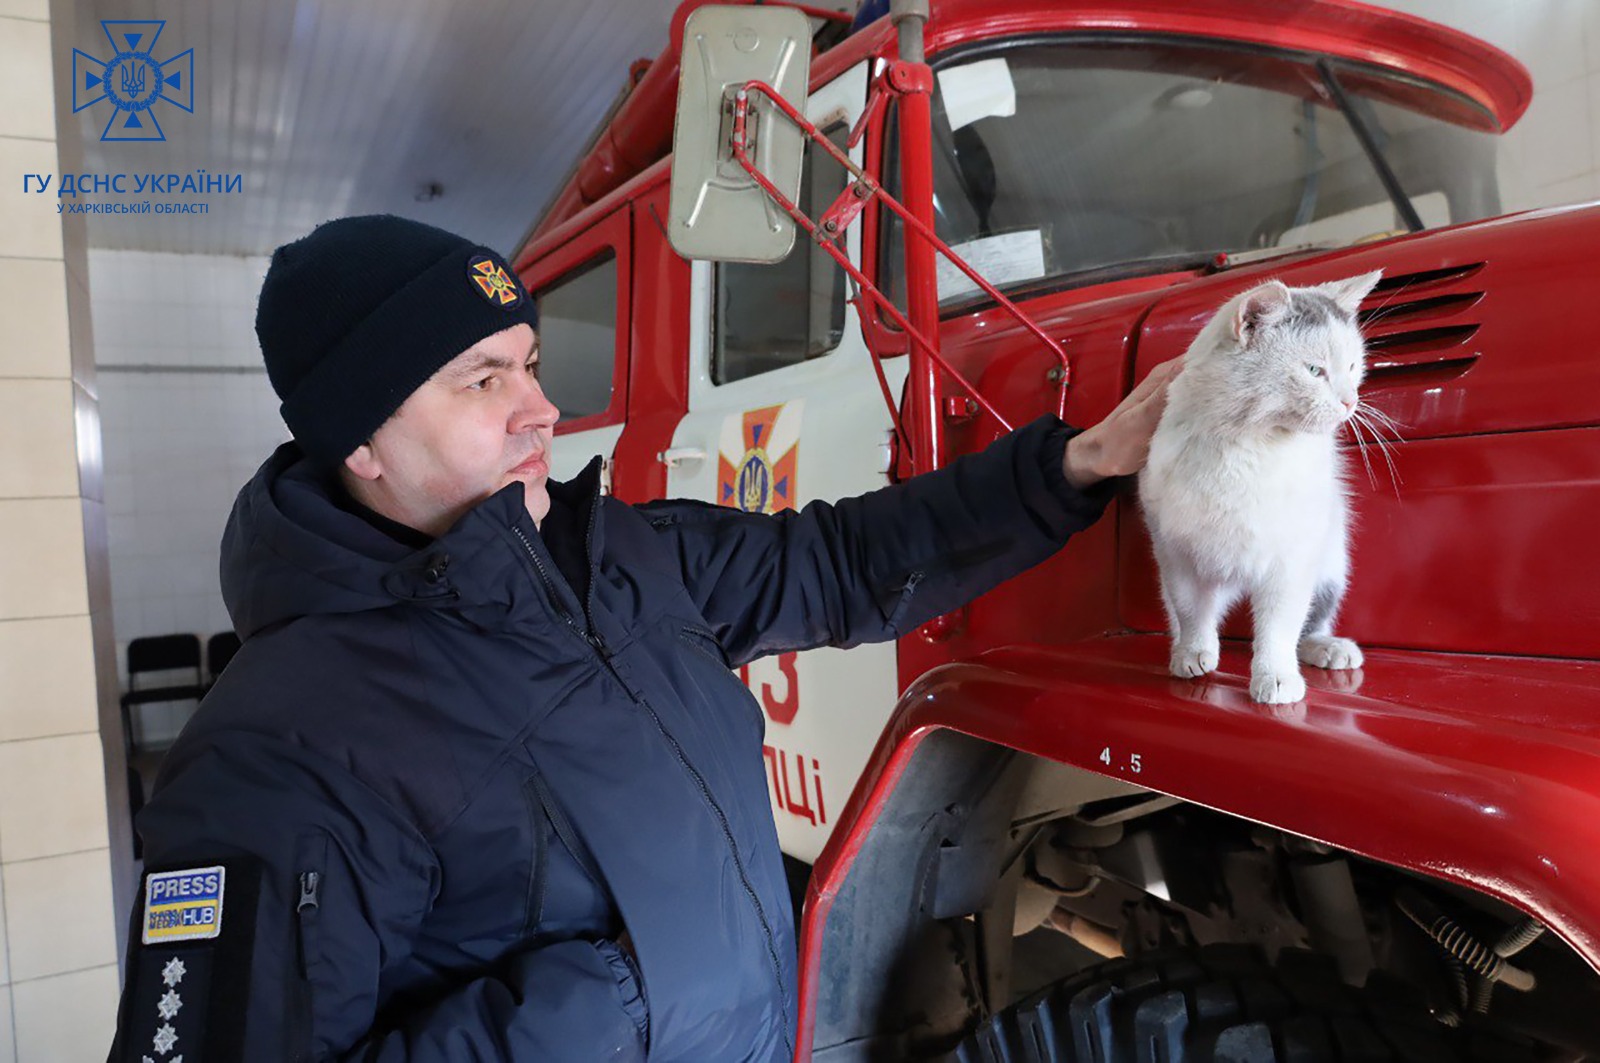 Мини-приют для котов и собак возник в пожарной части под Харьковом (видео)